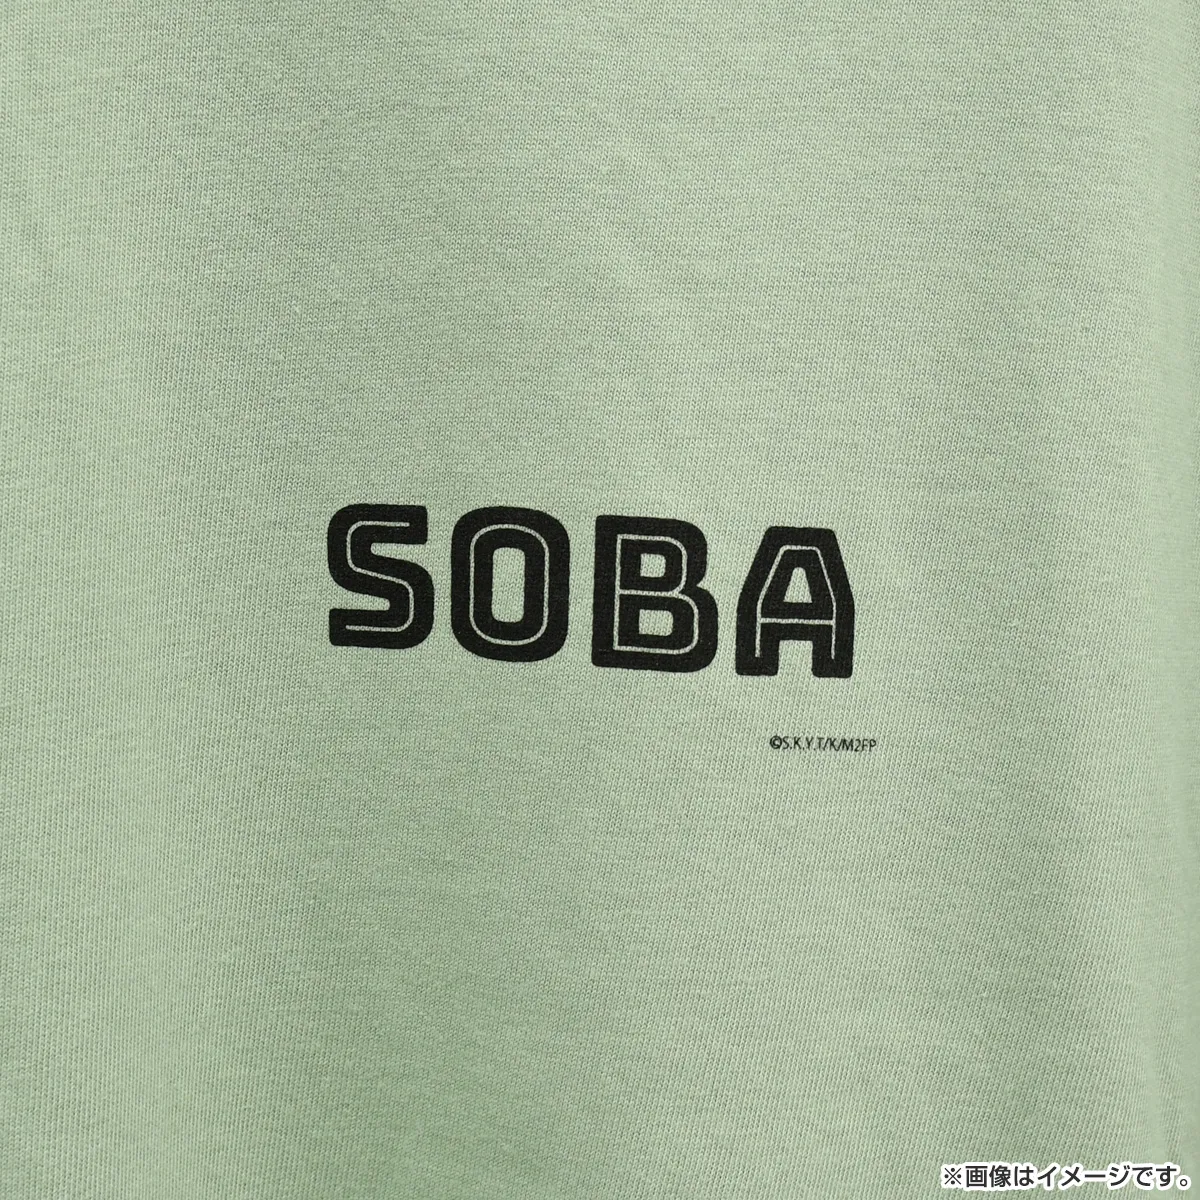 みなと商事コインランドリー２ Tシャツ（SOBA）